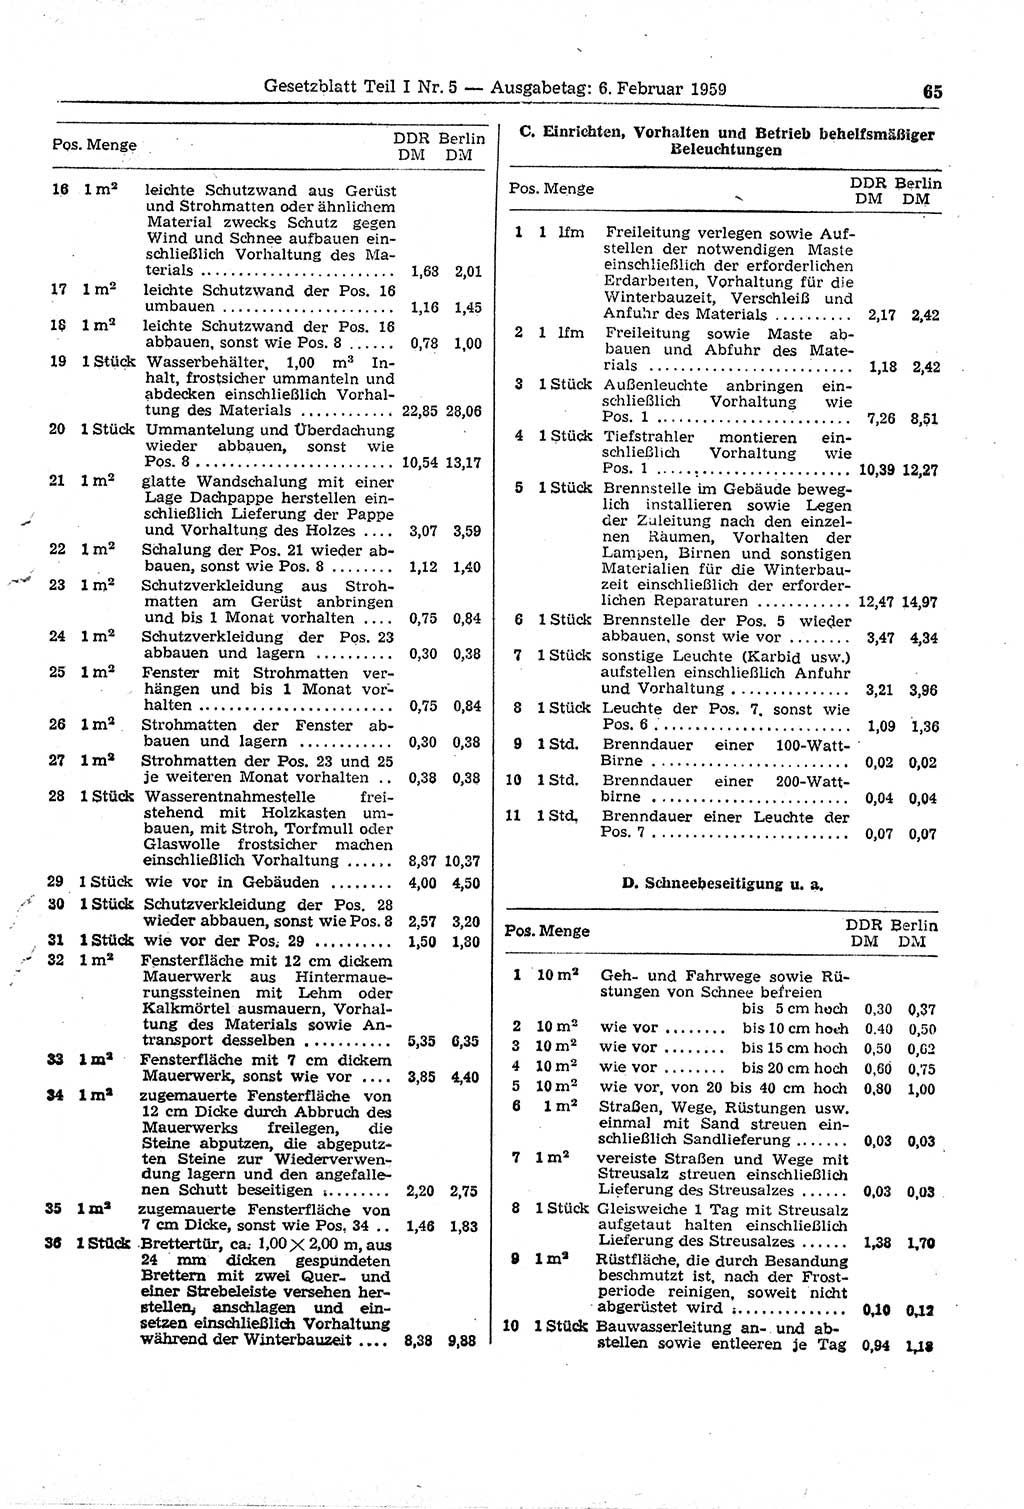 Gesetzblatt (GBl.) der Deutschen Demokratischen Republik (DDR) Teil Ⅰ 1959, Seite 65 (GBl. DDR Ⅰ 1959, S. 65)